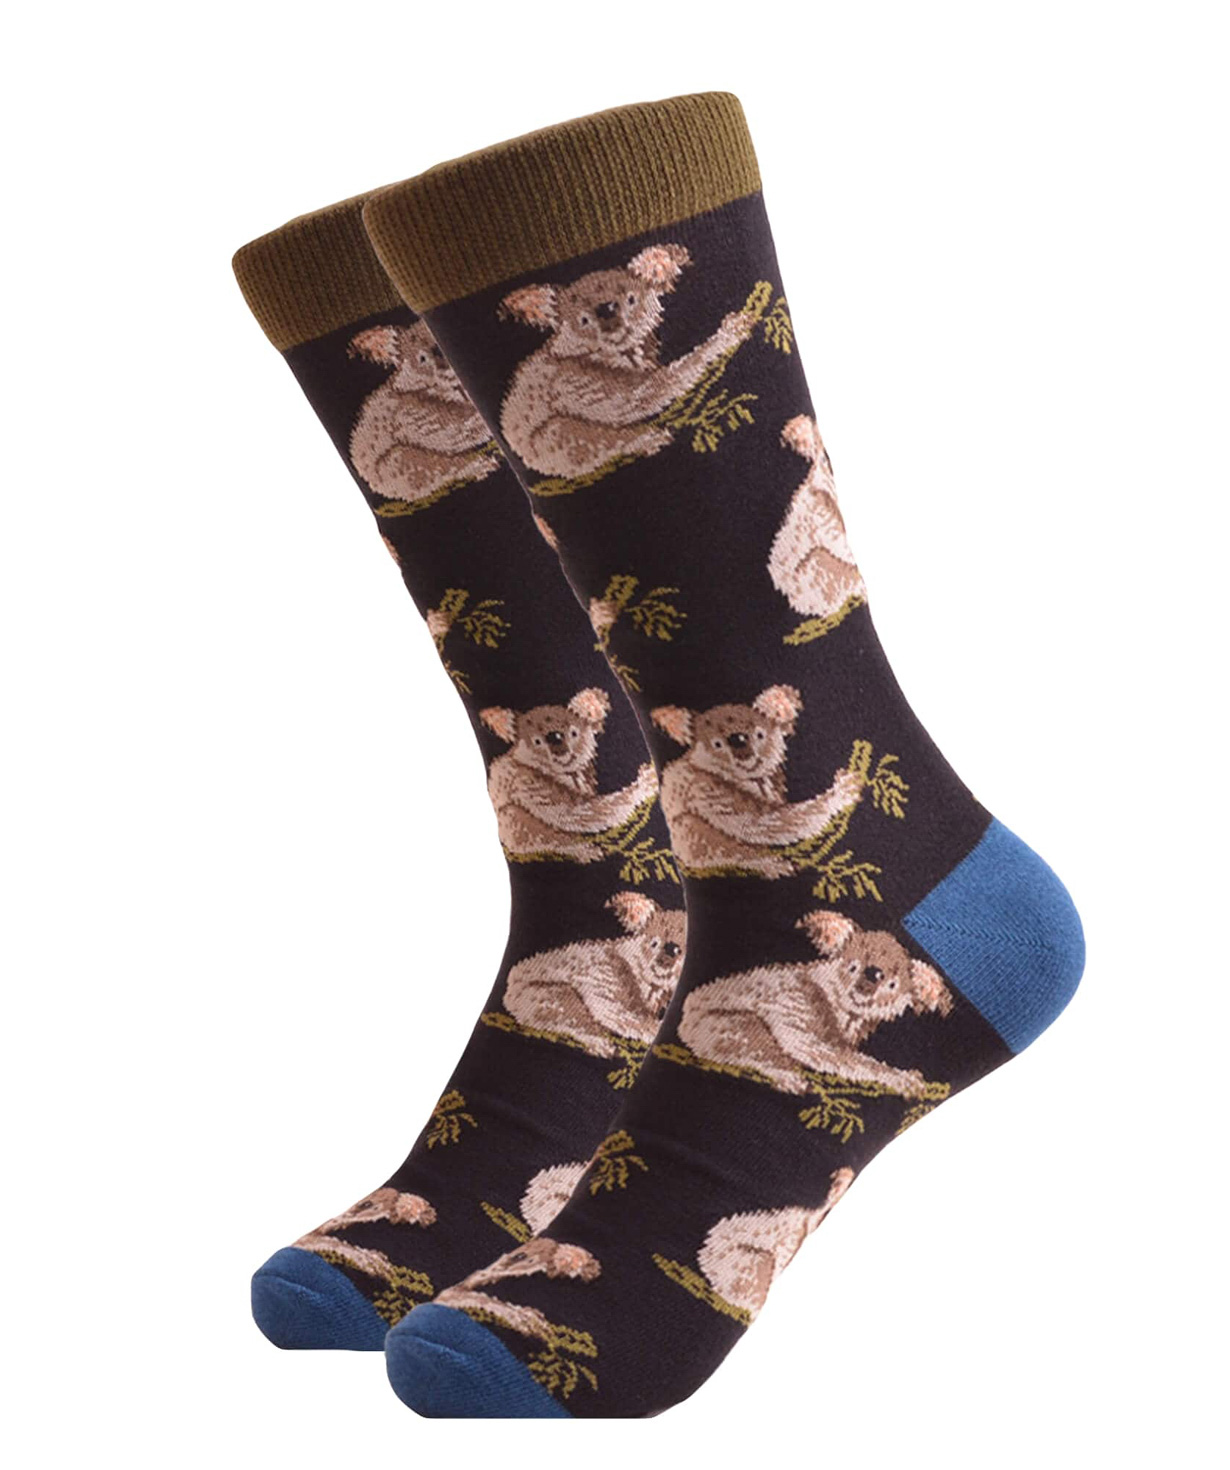 Socks `Zeal Socks` sloth №1